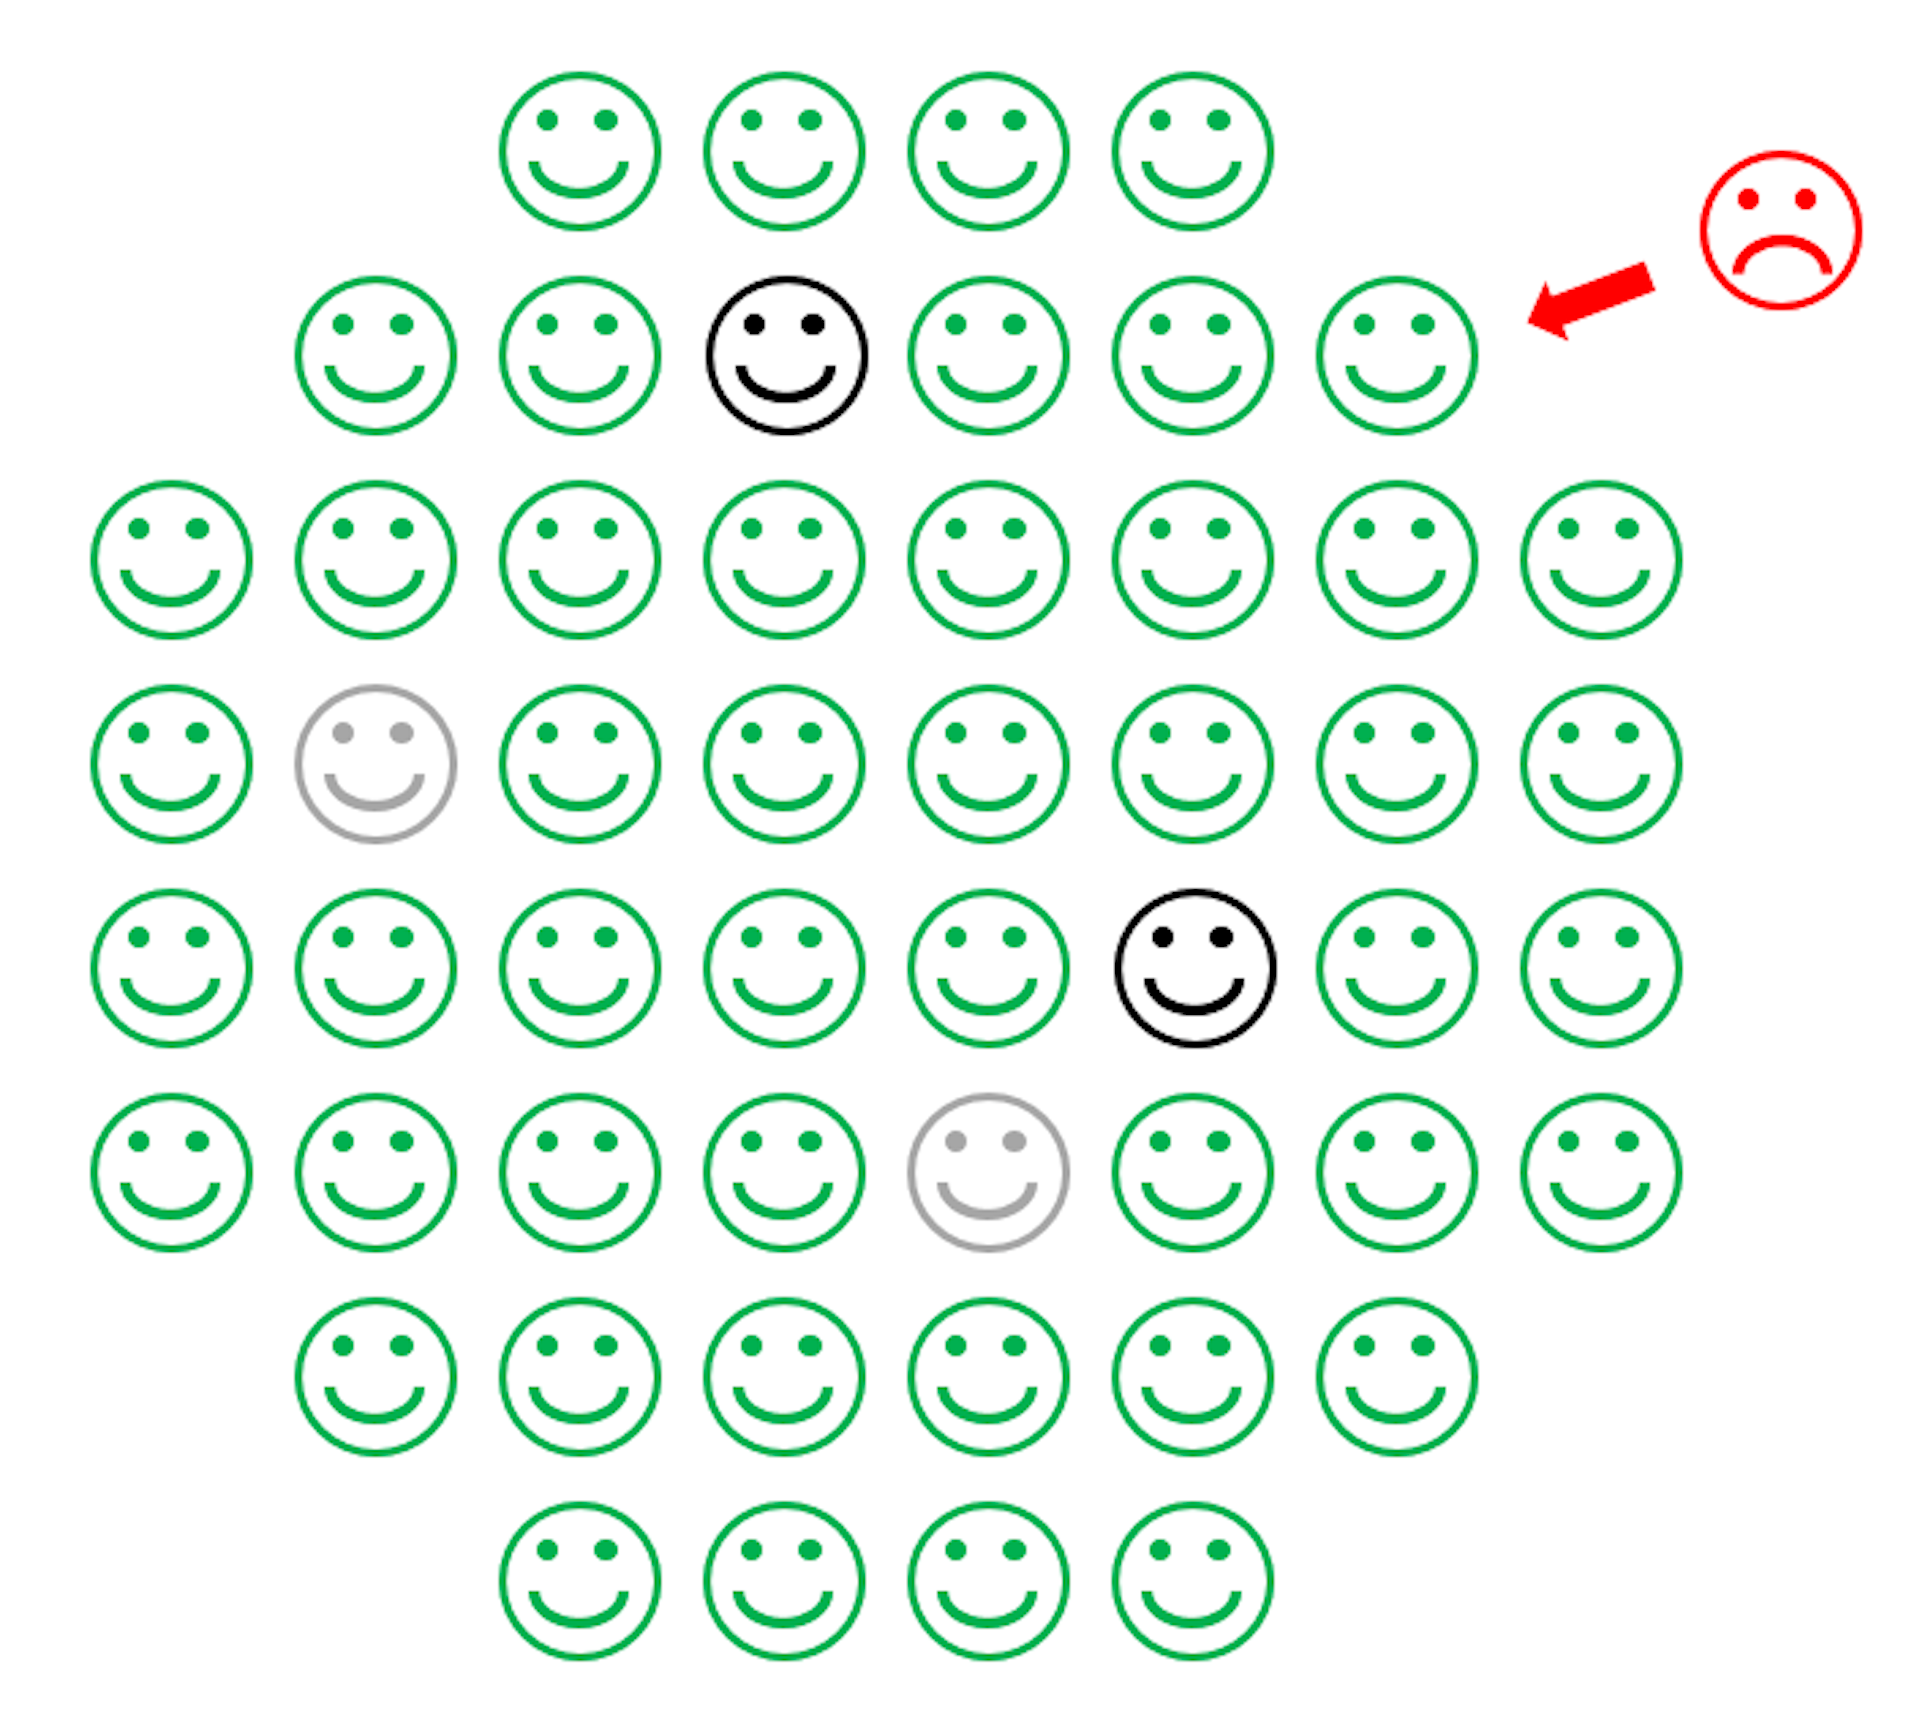 Rysunek przedstawiający krąg zielonych szczęśliwych twarzy z kilkoma niebieskimi szczęśliwymi twarzami w środku i czerwoną marszczącą się twarzą, która nie jest w stanie dotrzeć do niebieskich twarzy.